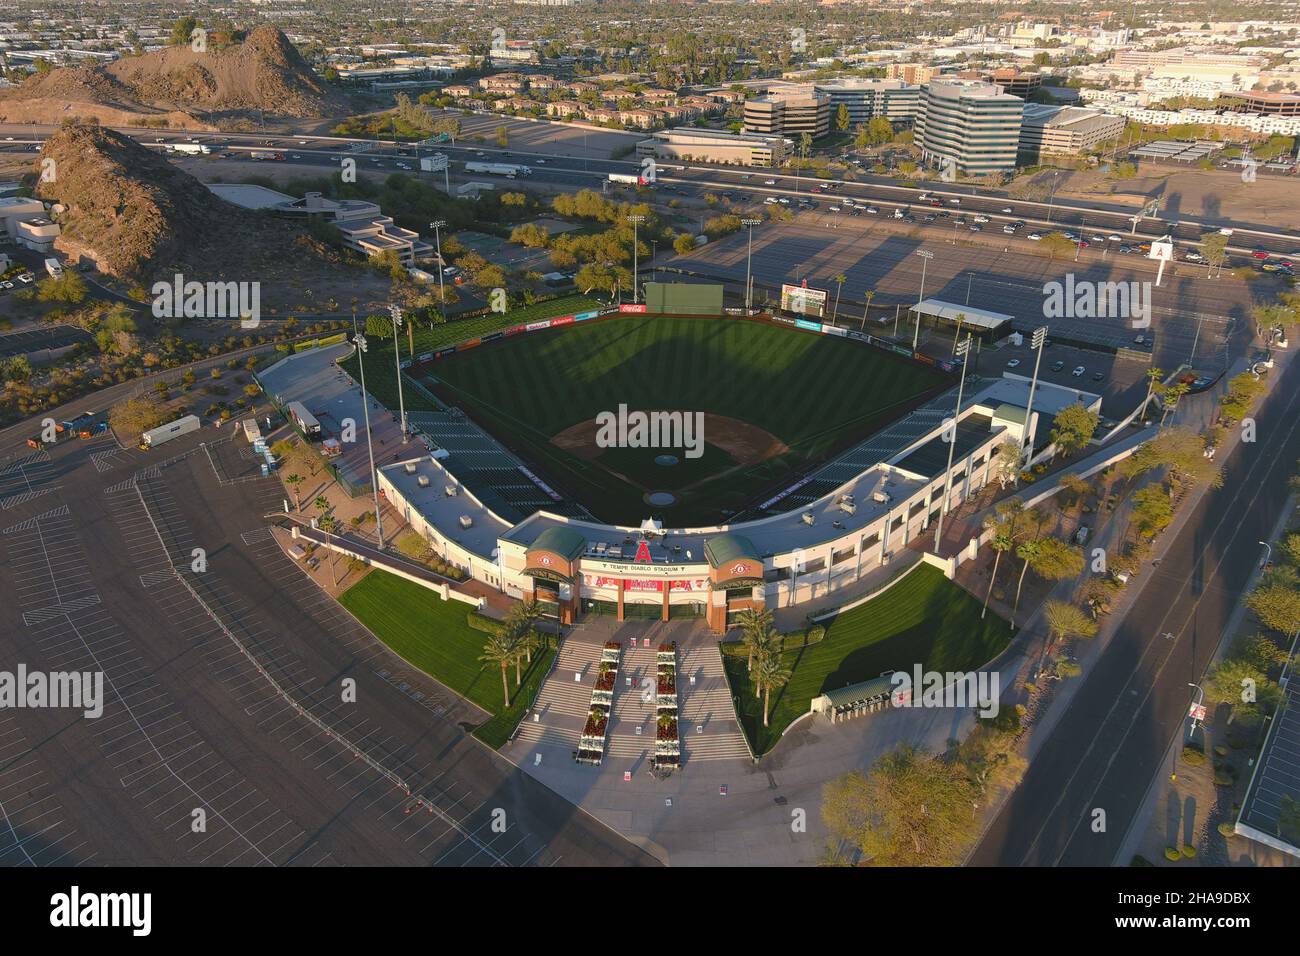 Una vista aerea dello stadio Tempe Diablo, martedì 2 marzo 2021, a Tempe, Ariz. Il complesso è la casa di allenamento primaverile dei Los Angeles Angels. Foto Stock